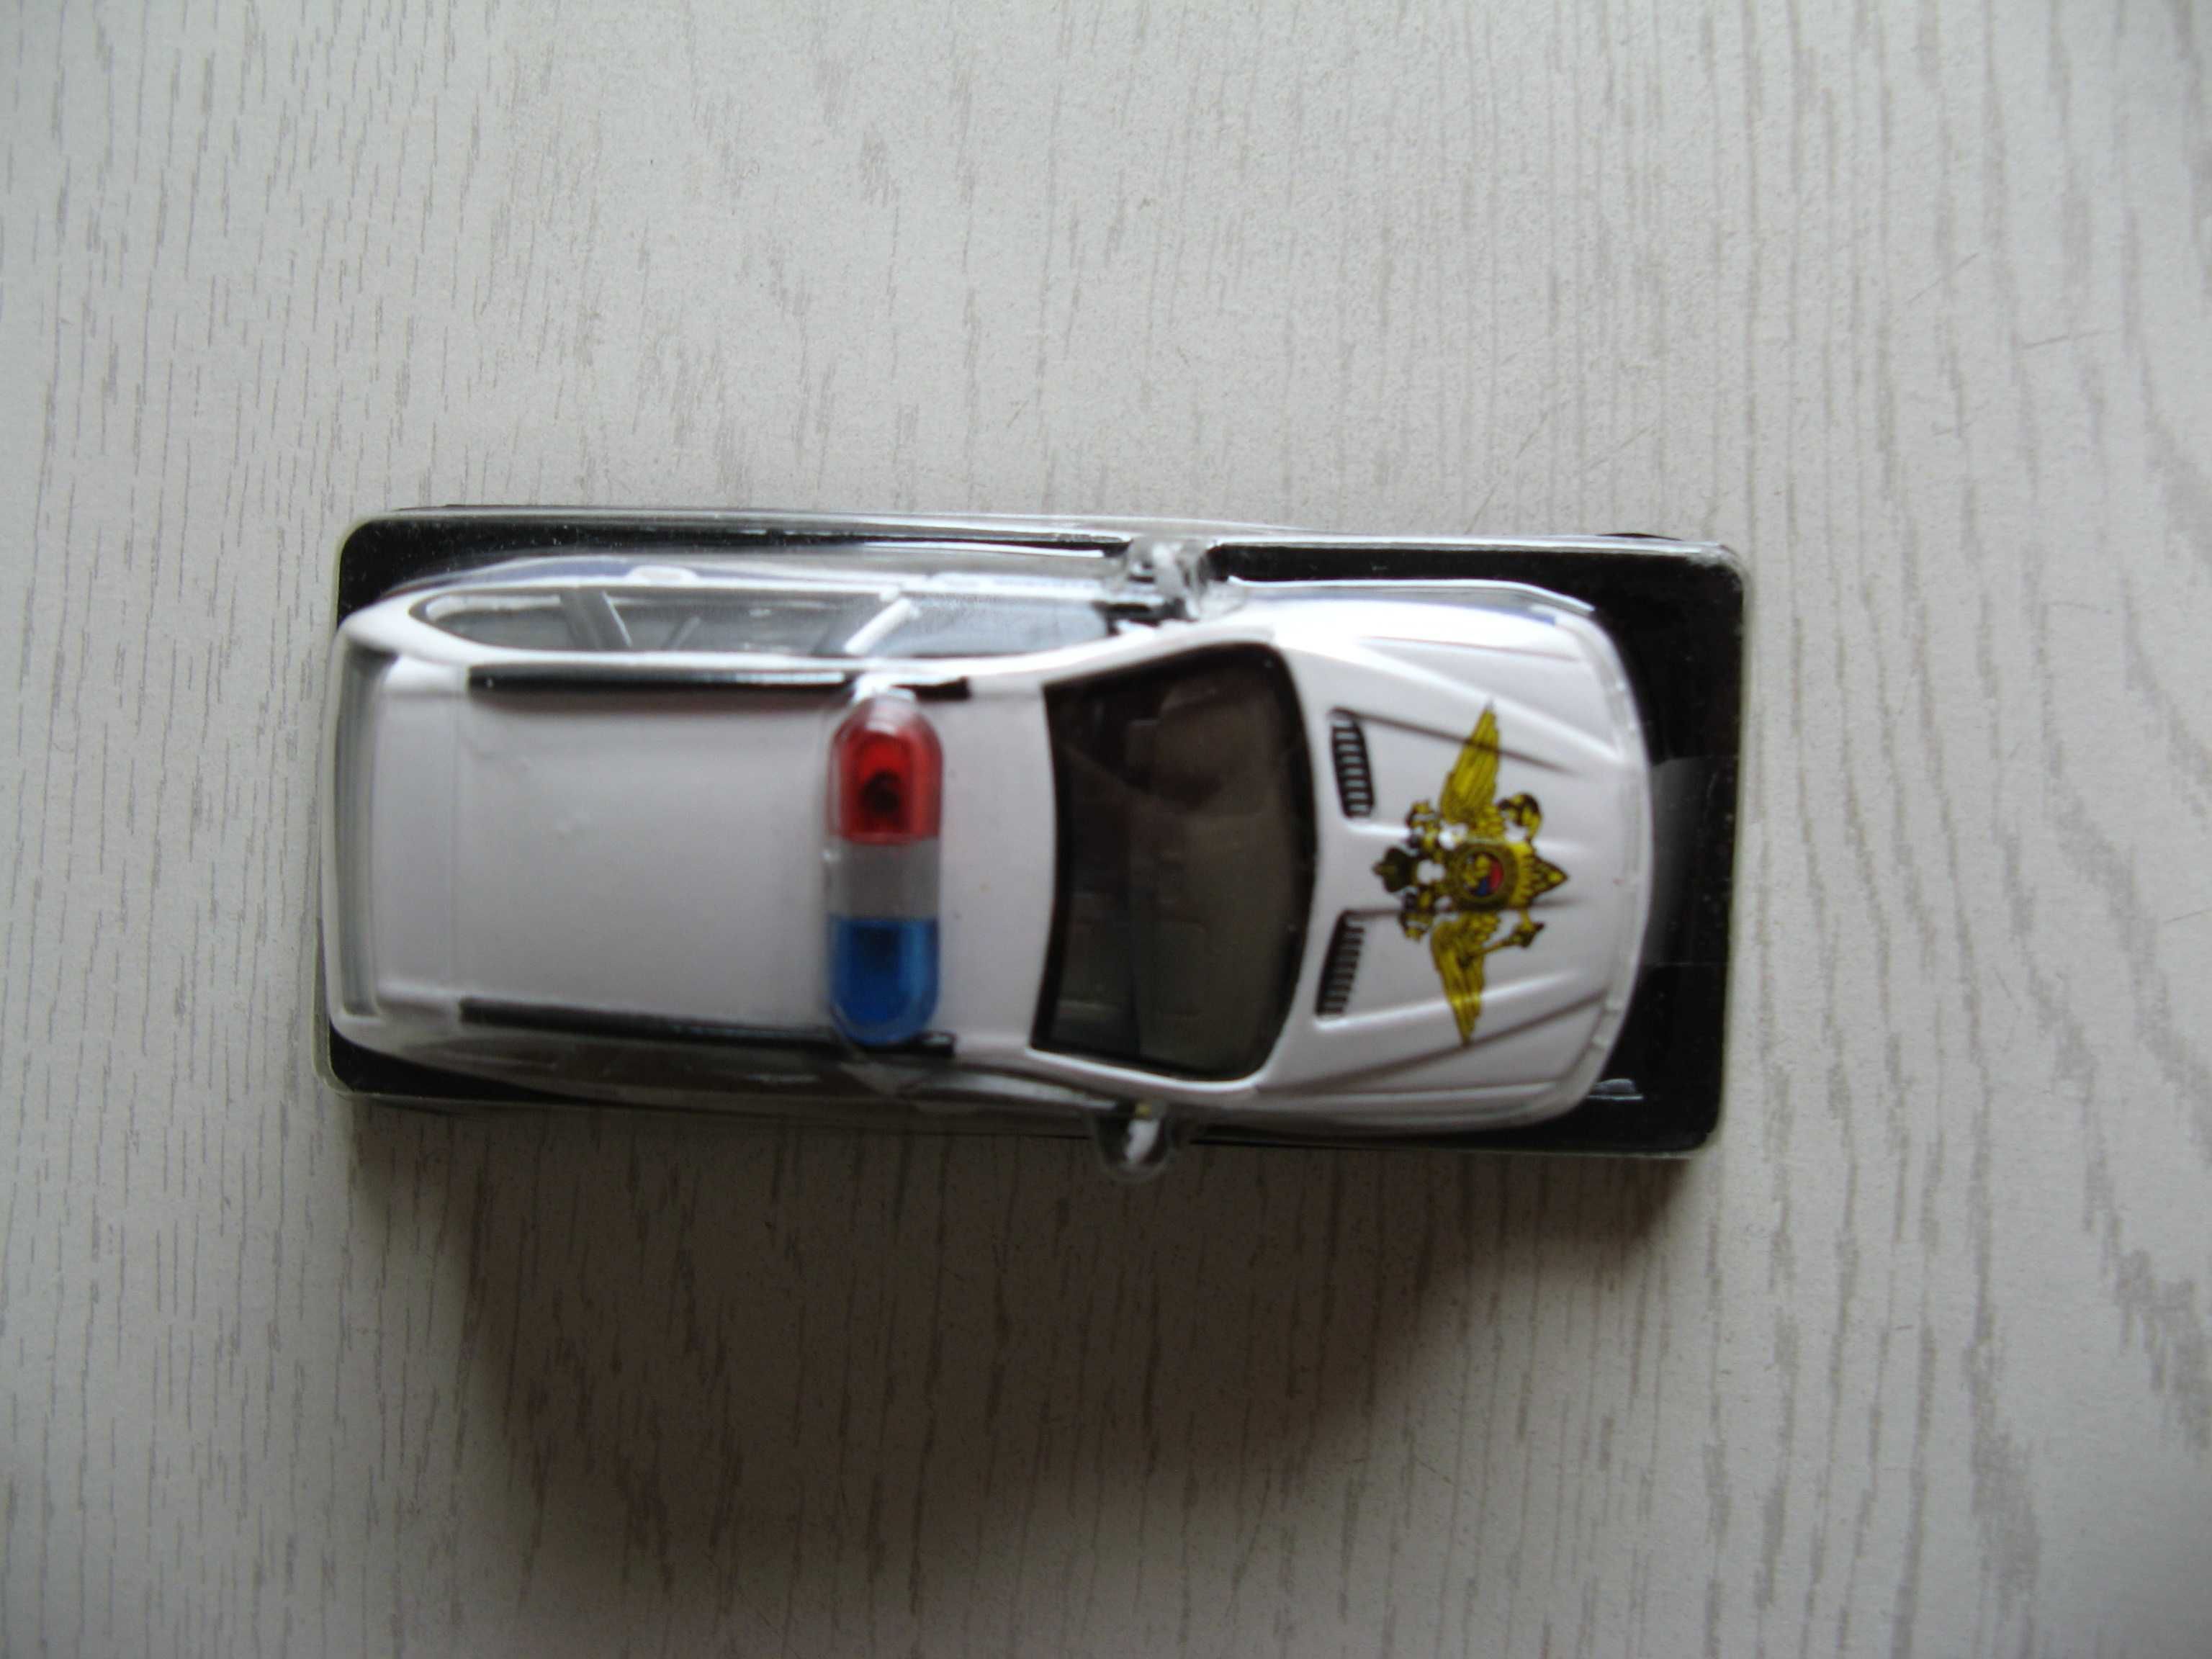 Samochód policyjny BMW X5/Nowy!